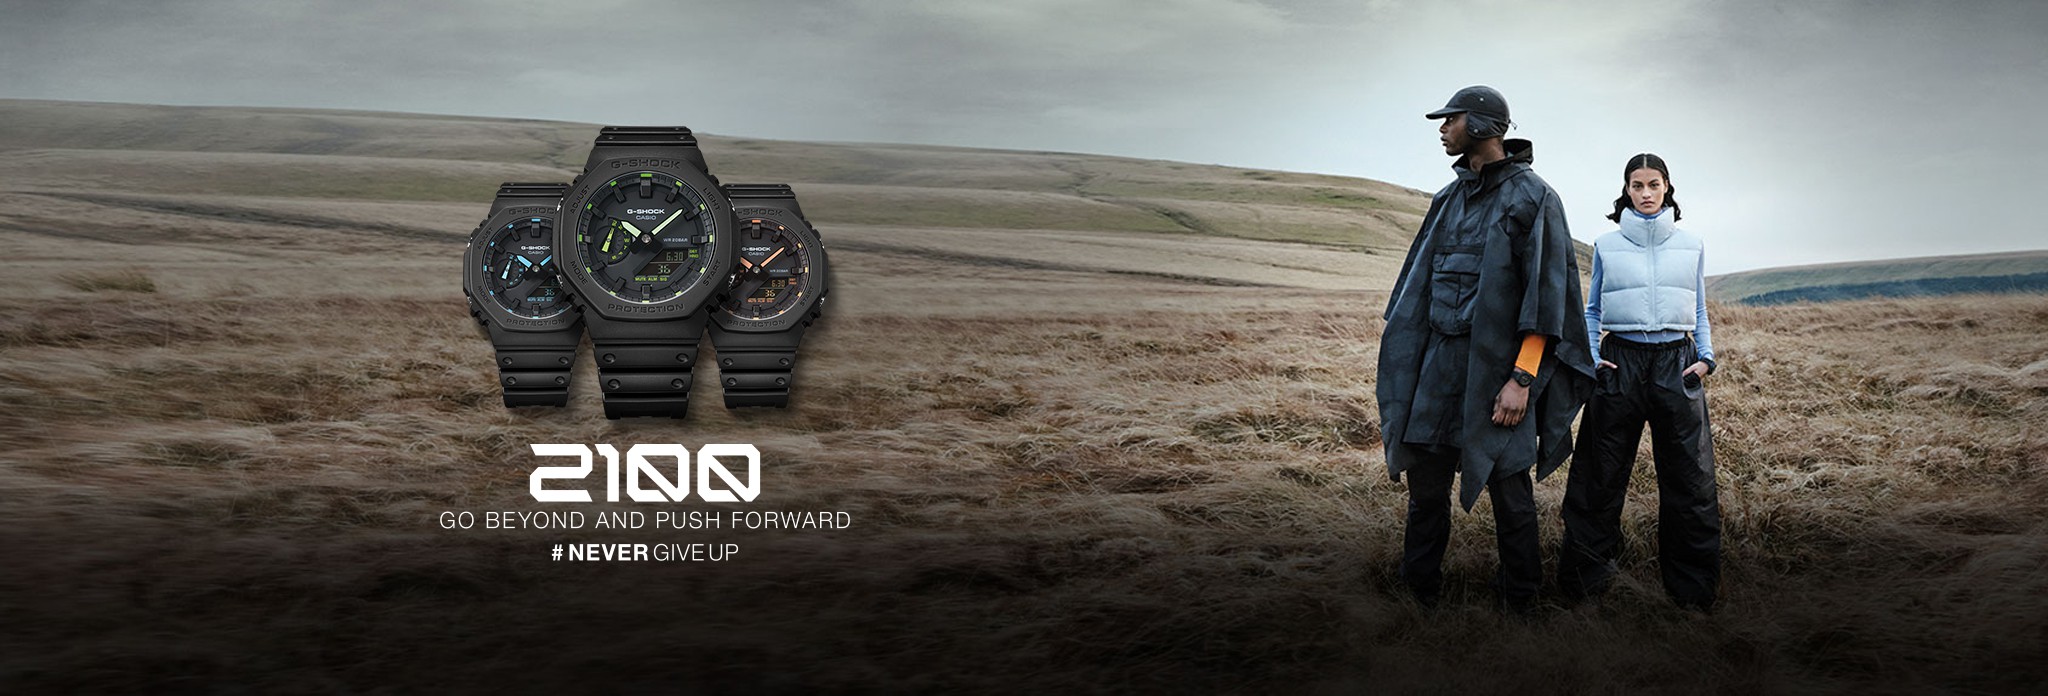 Casio G-Shock GA-2100 Watches Range